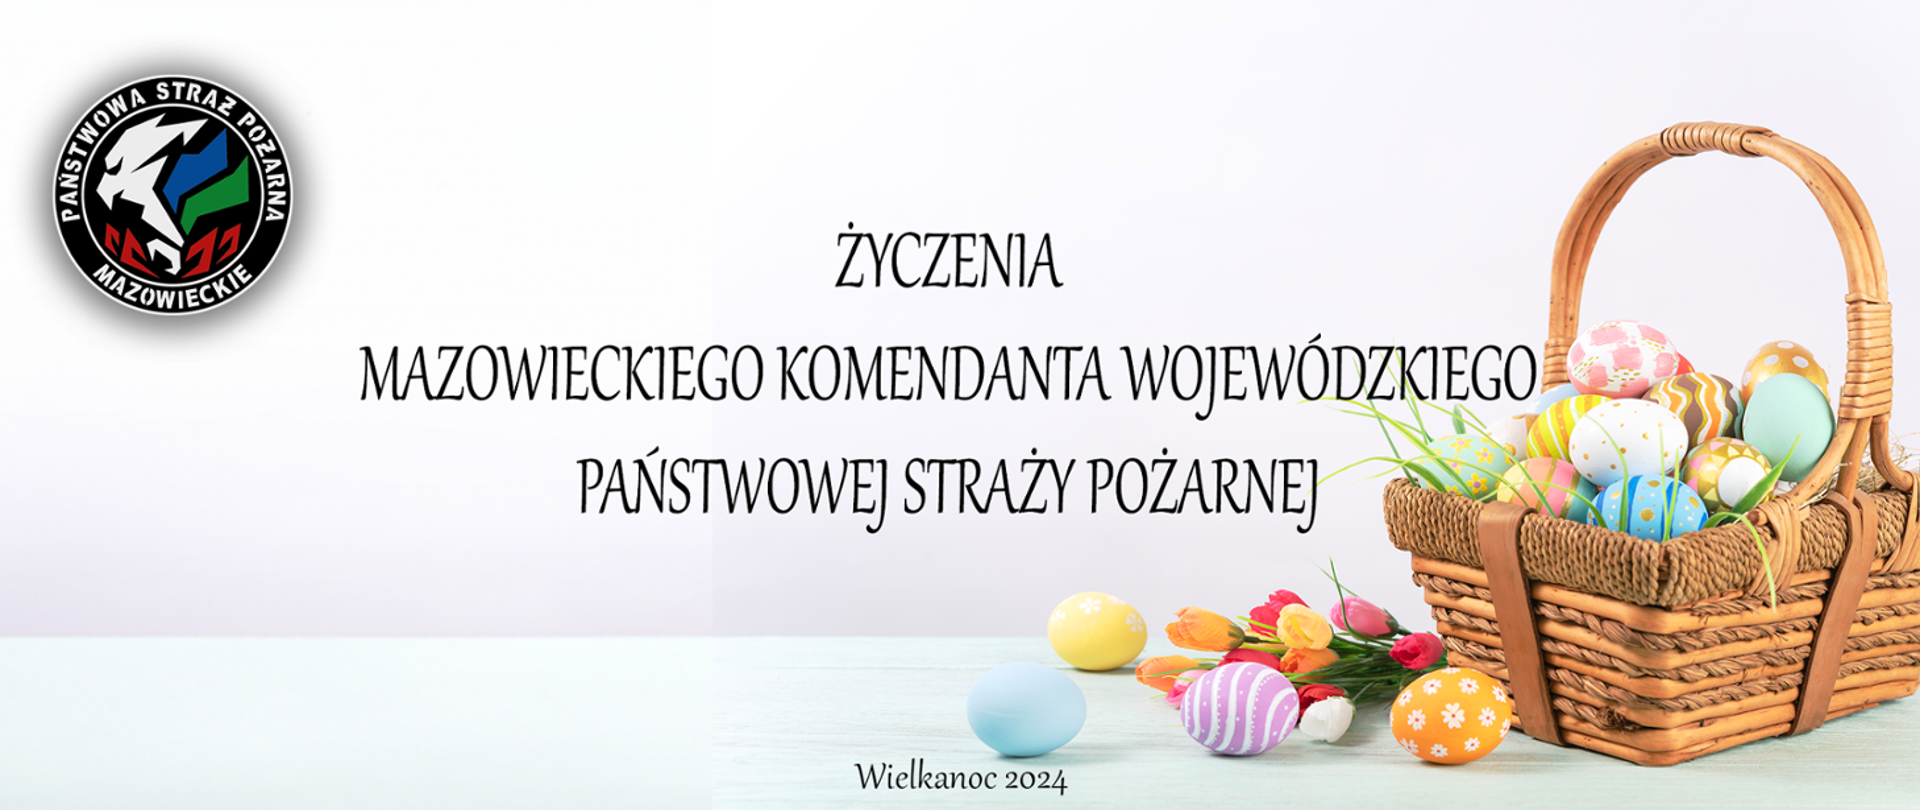 Życzenia Mazowieckiego Komendanta Wojewódzkiego PSP z okazji Świąt Wielkanocnych logo KW PSP i koszyczek Wielkanocny